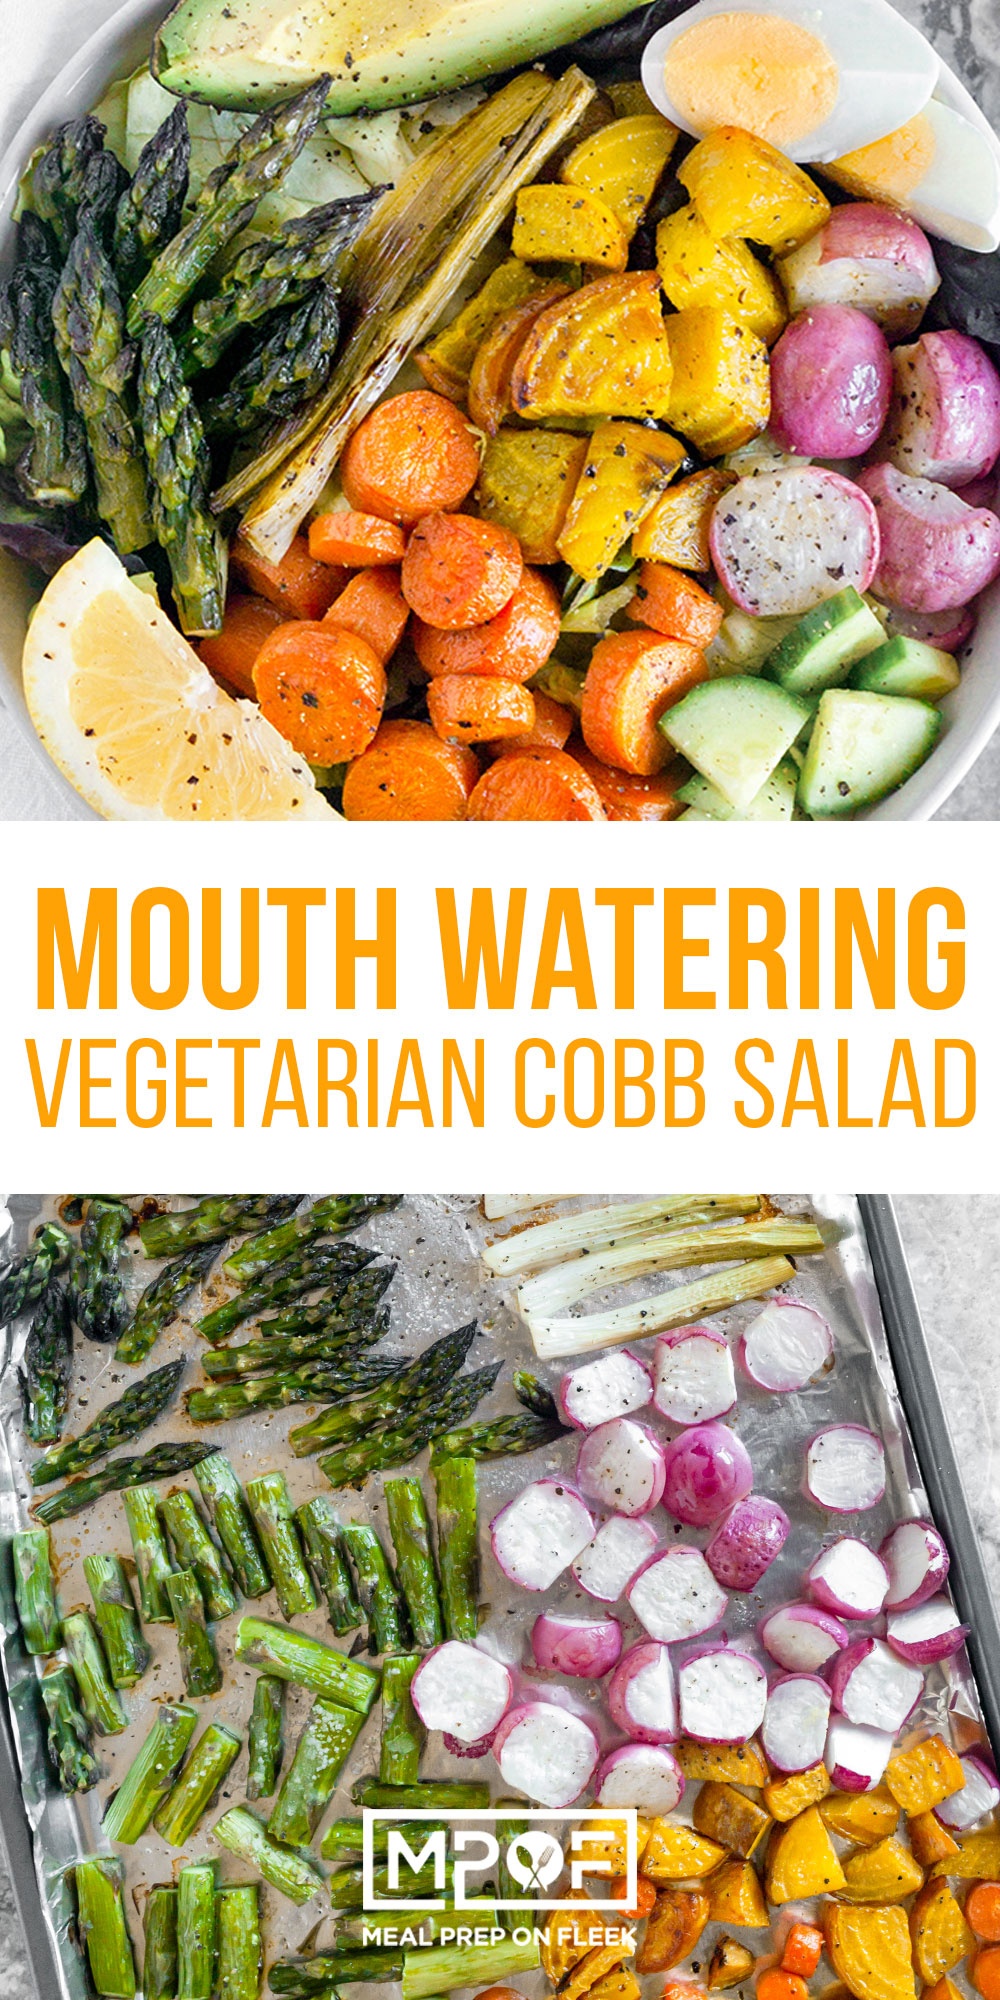 Vegetarian Cobb Salad Meal Prep